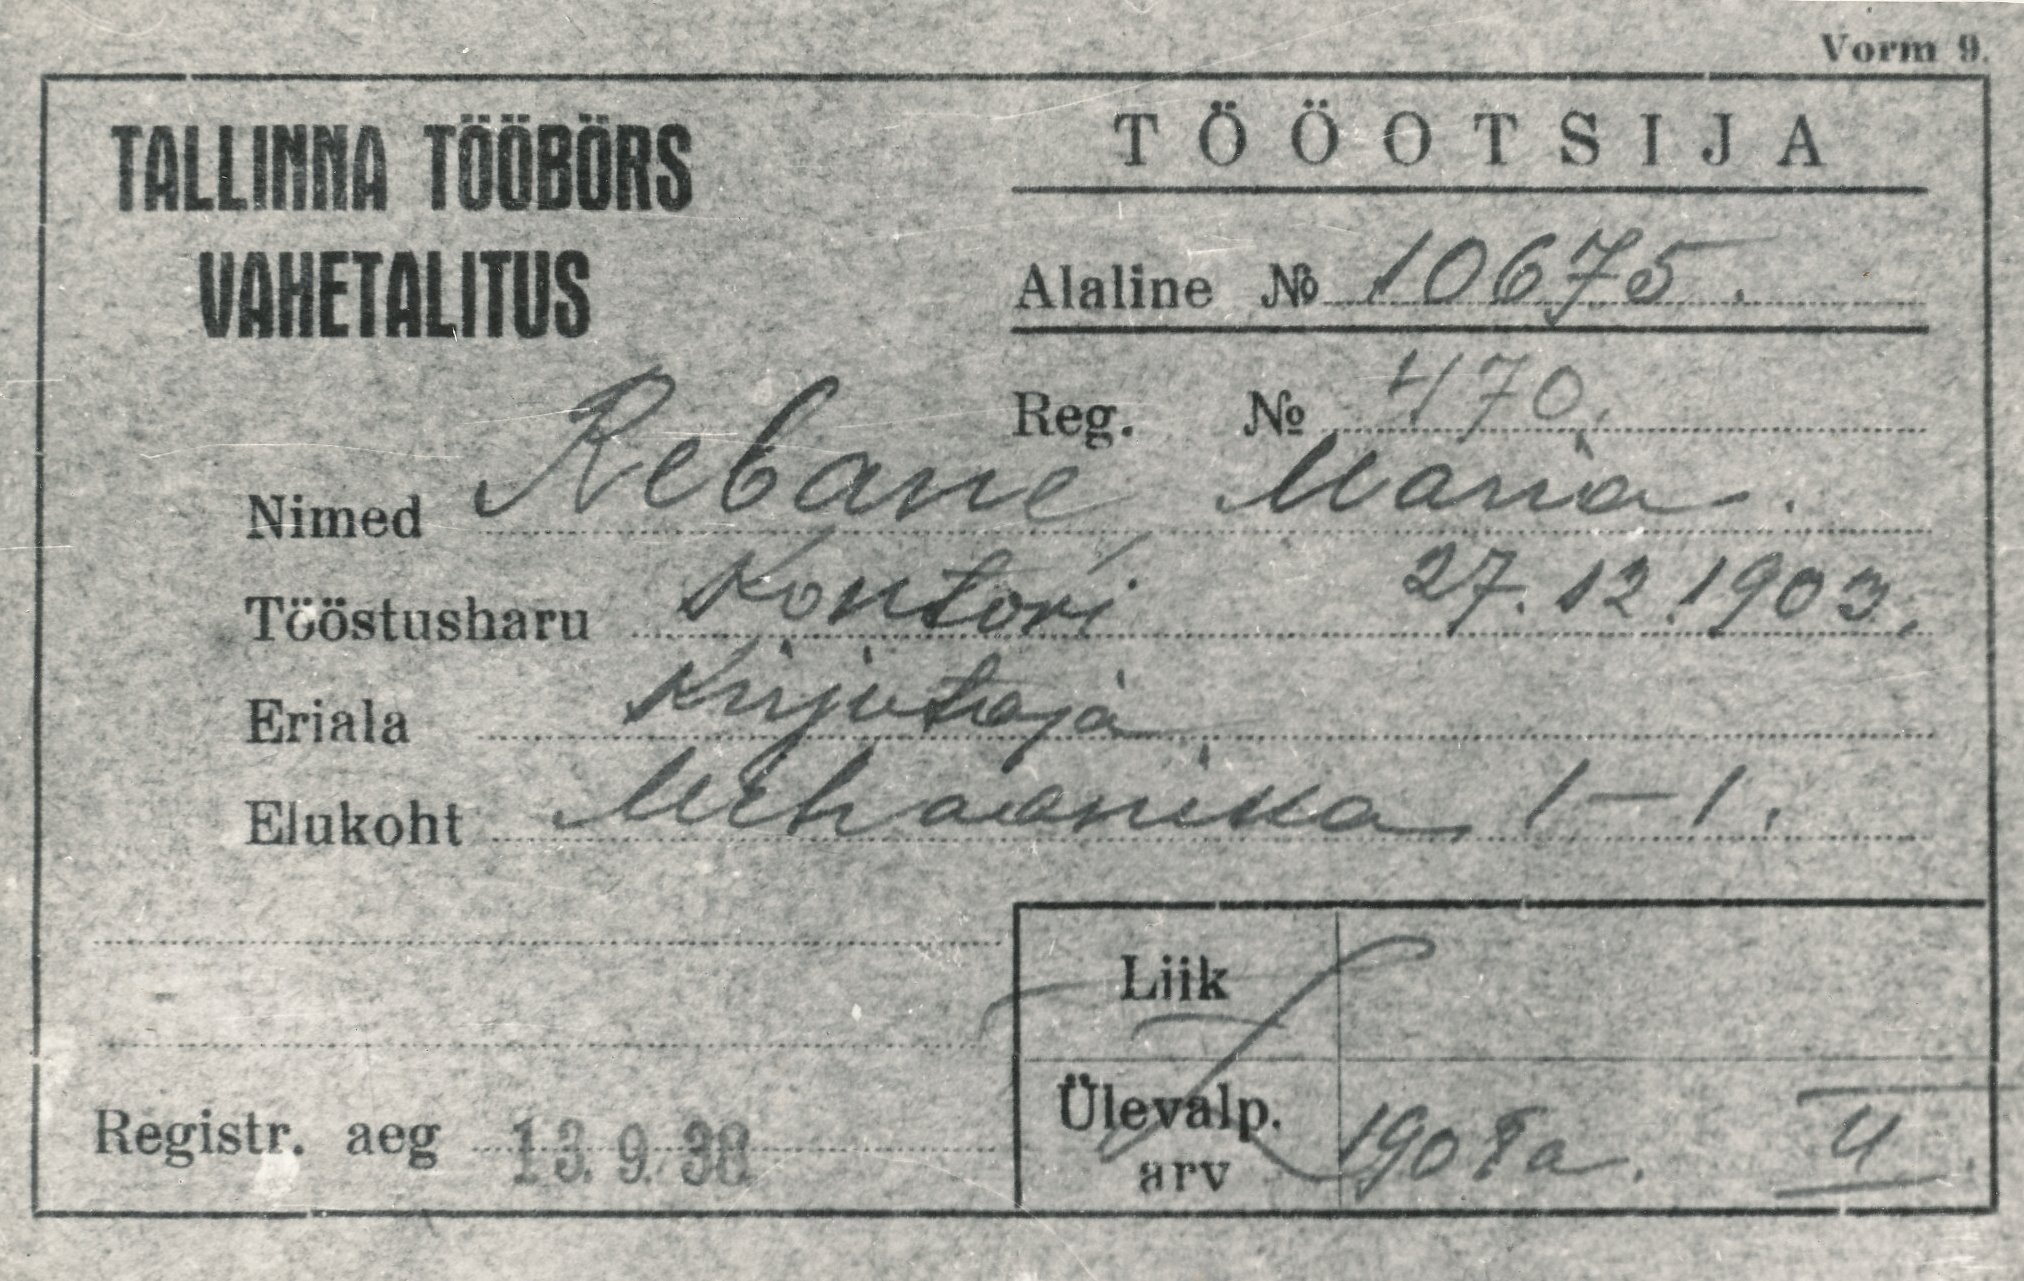 Foto.  Tallinna tööbörsi poolt 1938.a. Maria Rebasele antud tööotsija kaardi nr. 10675 fotokoopia.